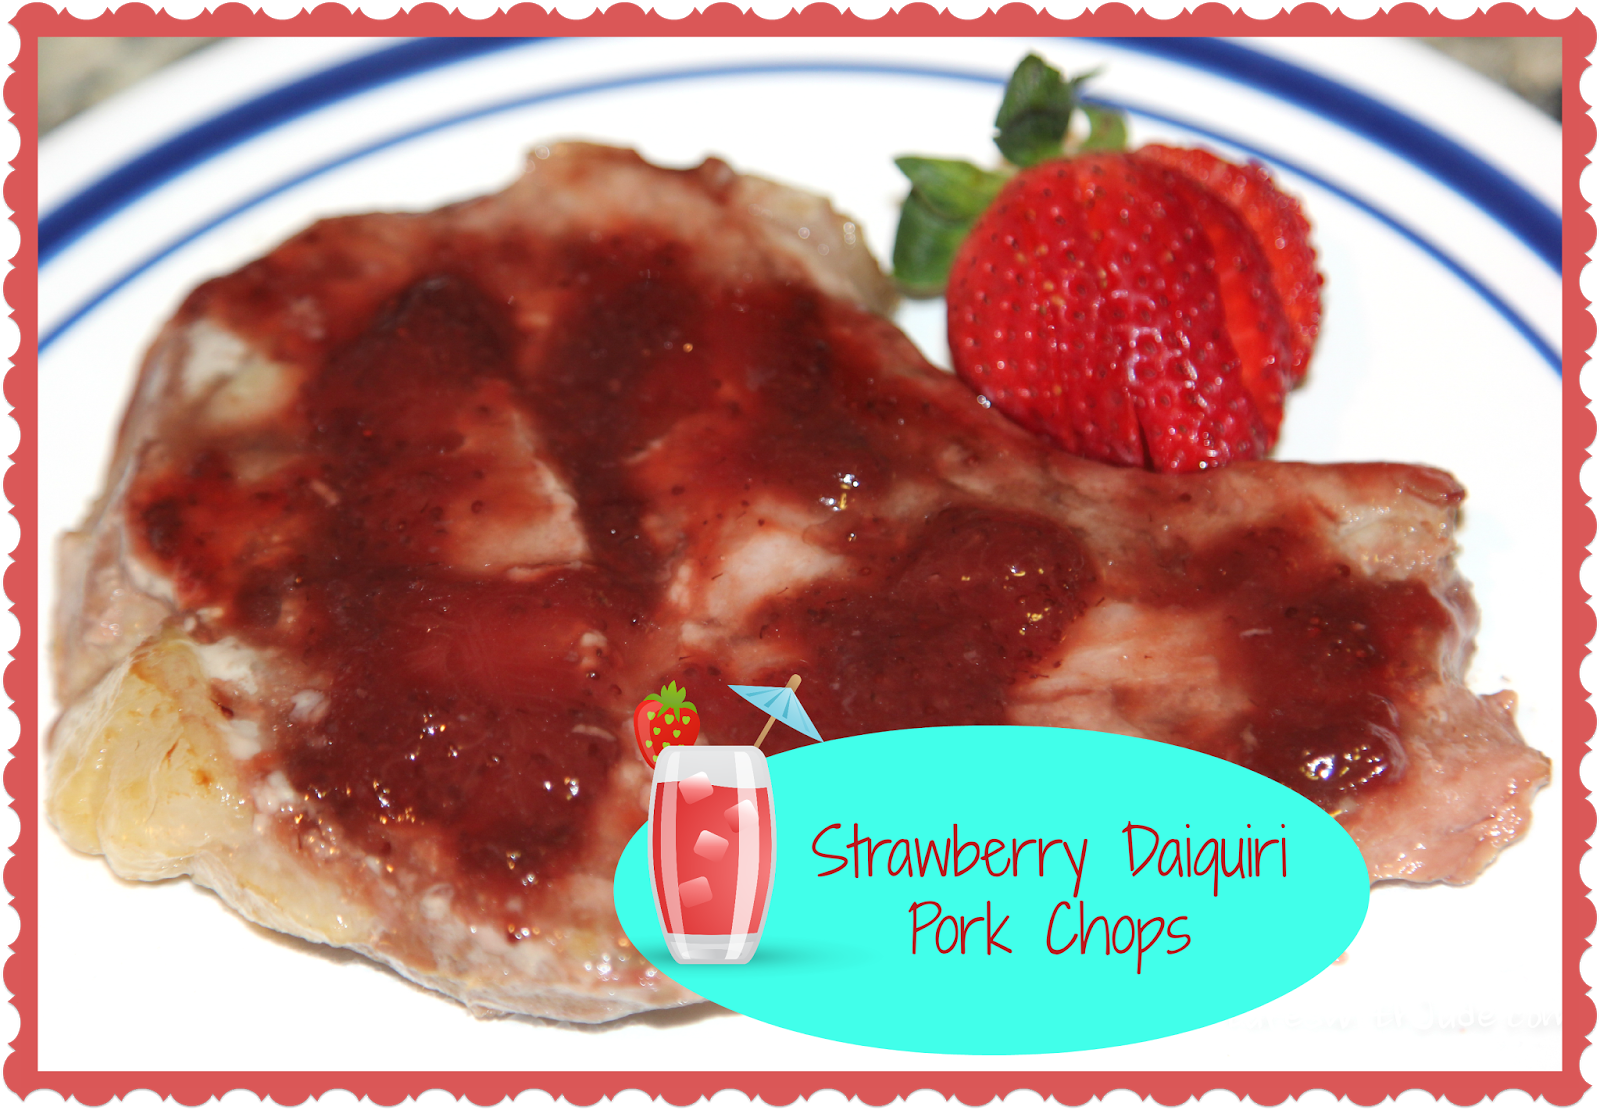 Strawberry Daiquiri Pork Chops recipe